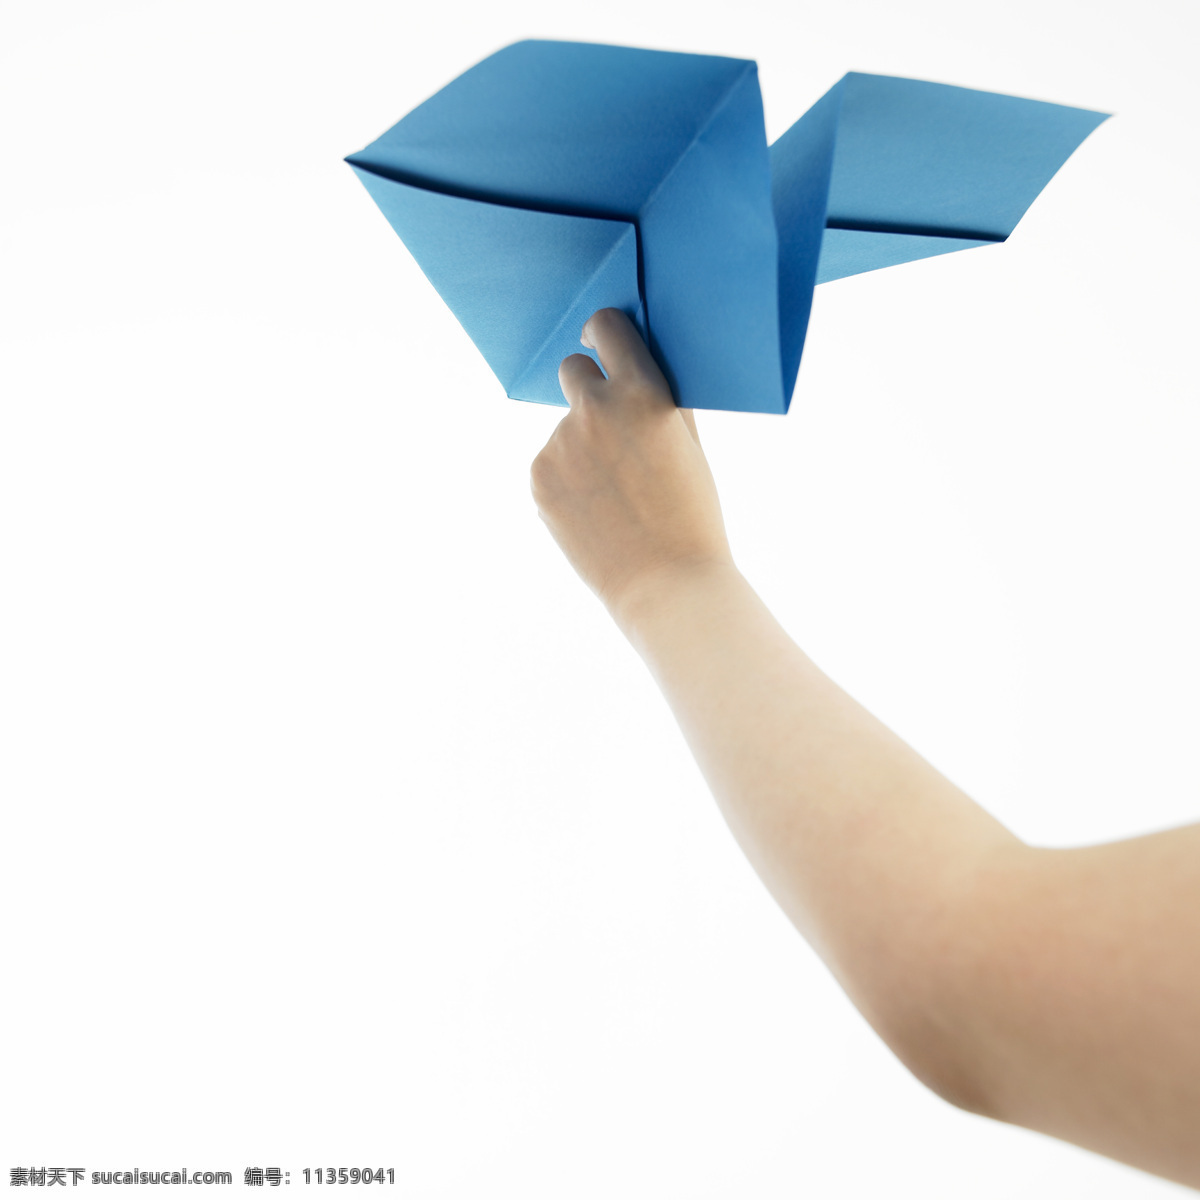 梦想起航 其他人物 人物图库 纸飞机 纸 飞机图片 玩纸飞机 蓝色纸飞机 手拿纸飞机 童年玩具 手势表达 psd源文件